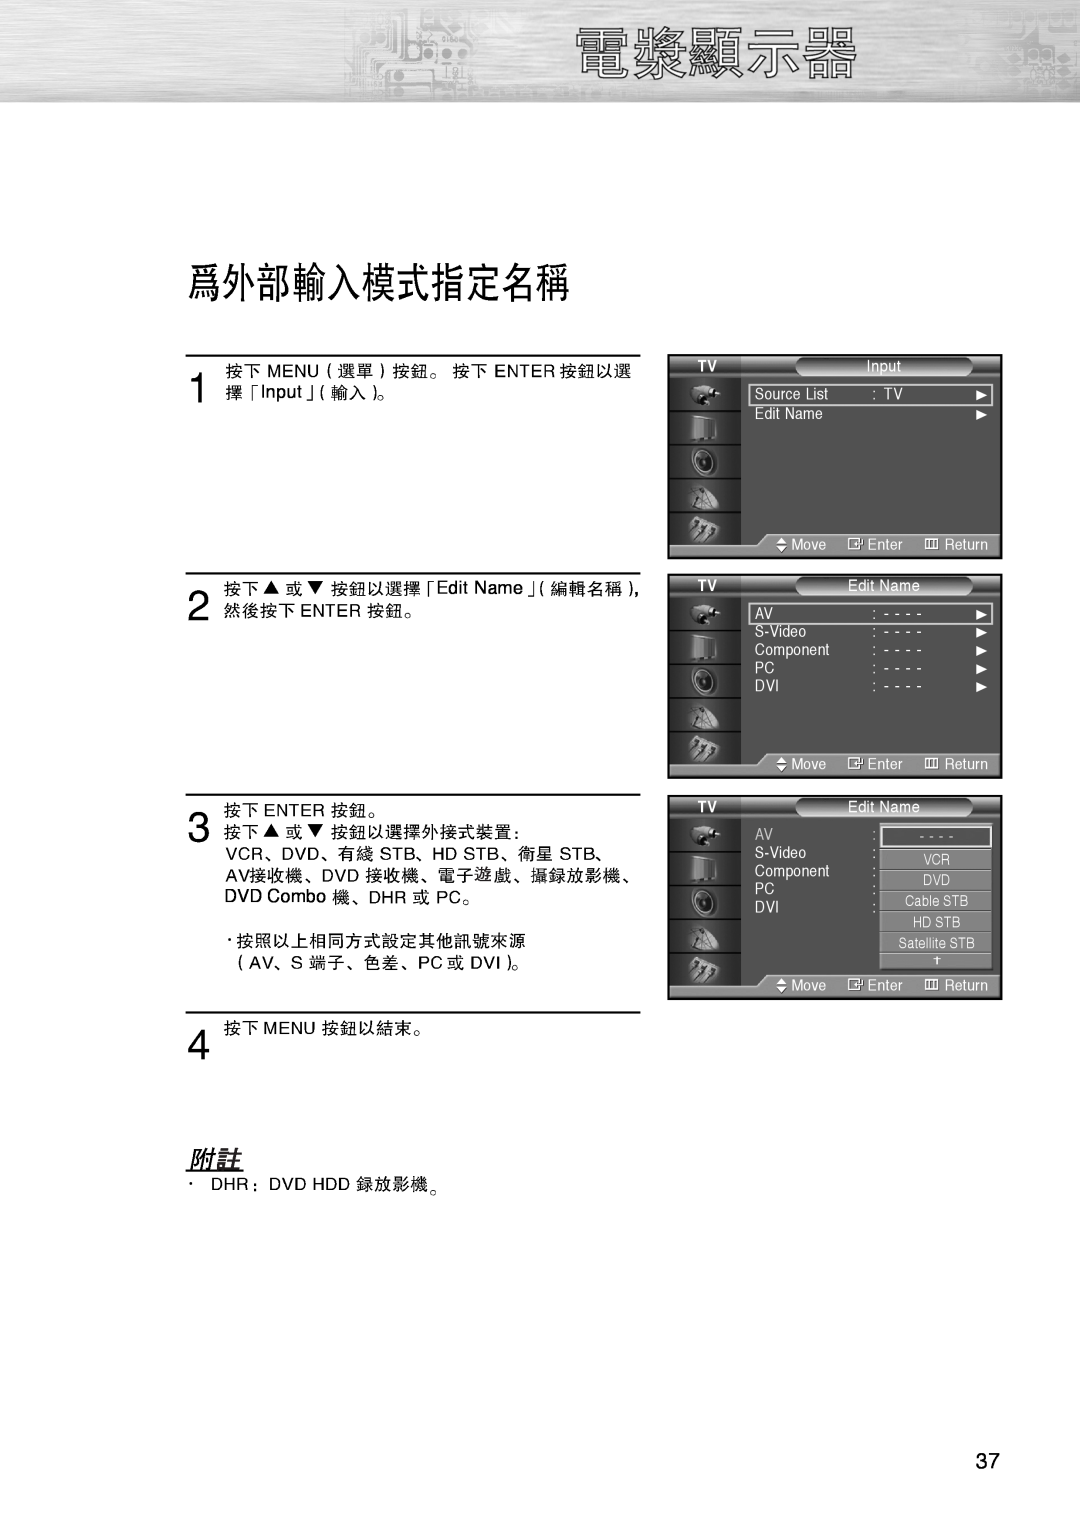 Samsung PL-42D4S manual Input Edit Name, DVD Combo 